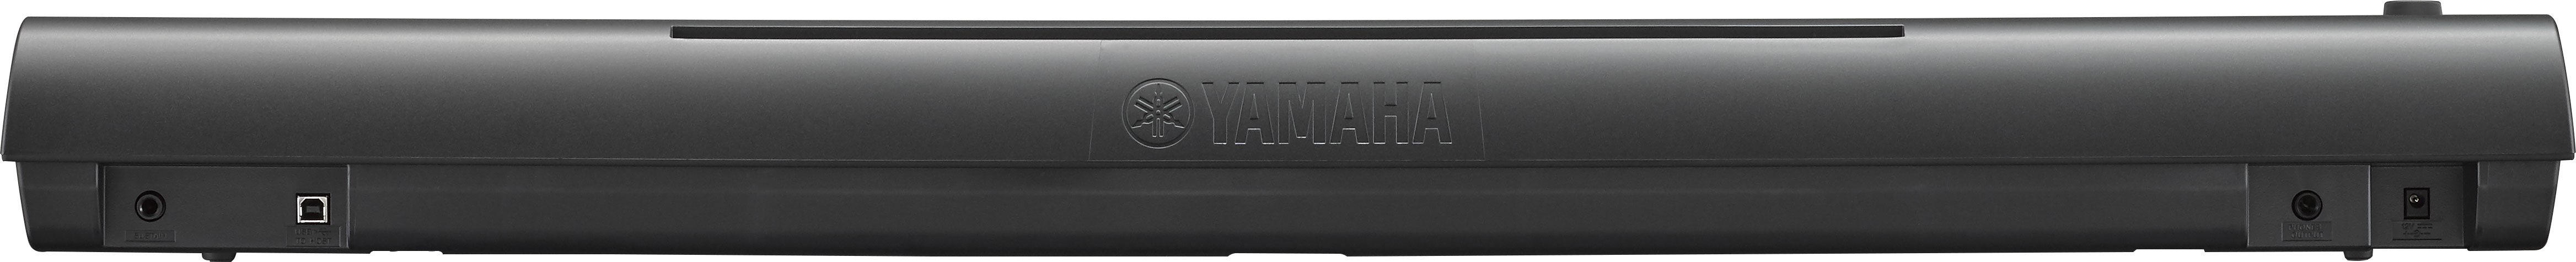 Yamaha Np-12 - Black - Portable digital piano - Variation 2